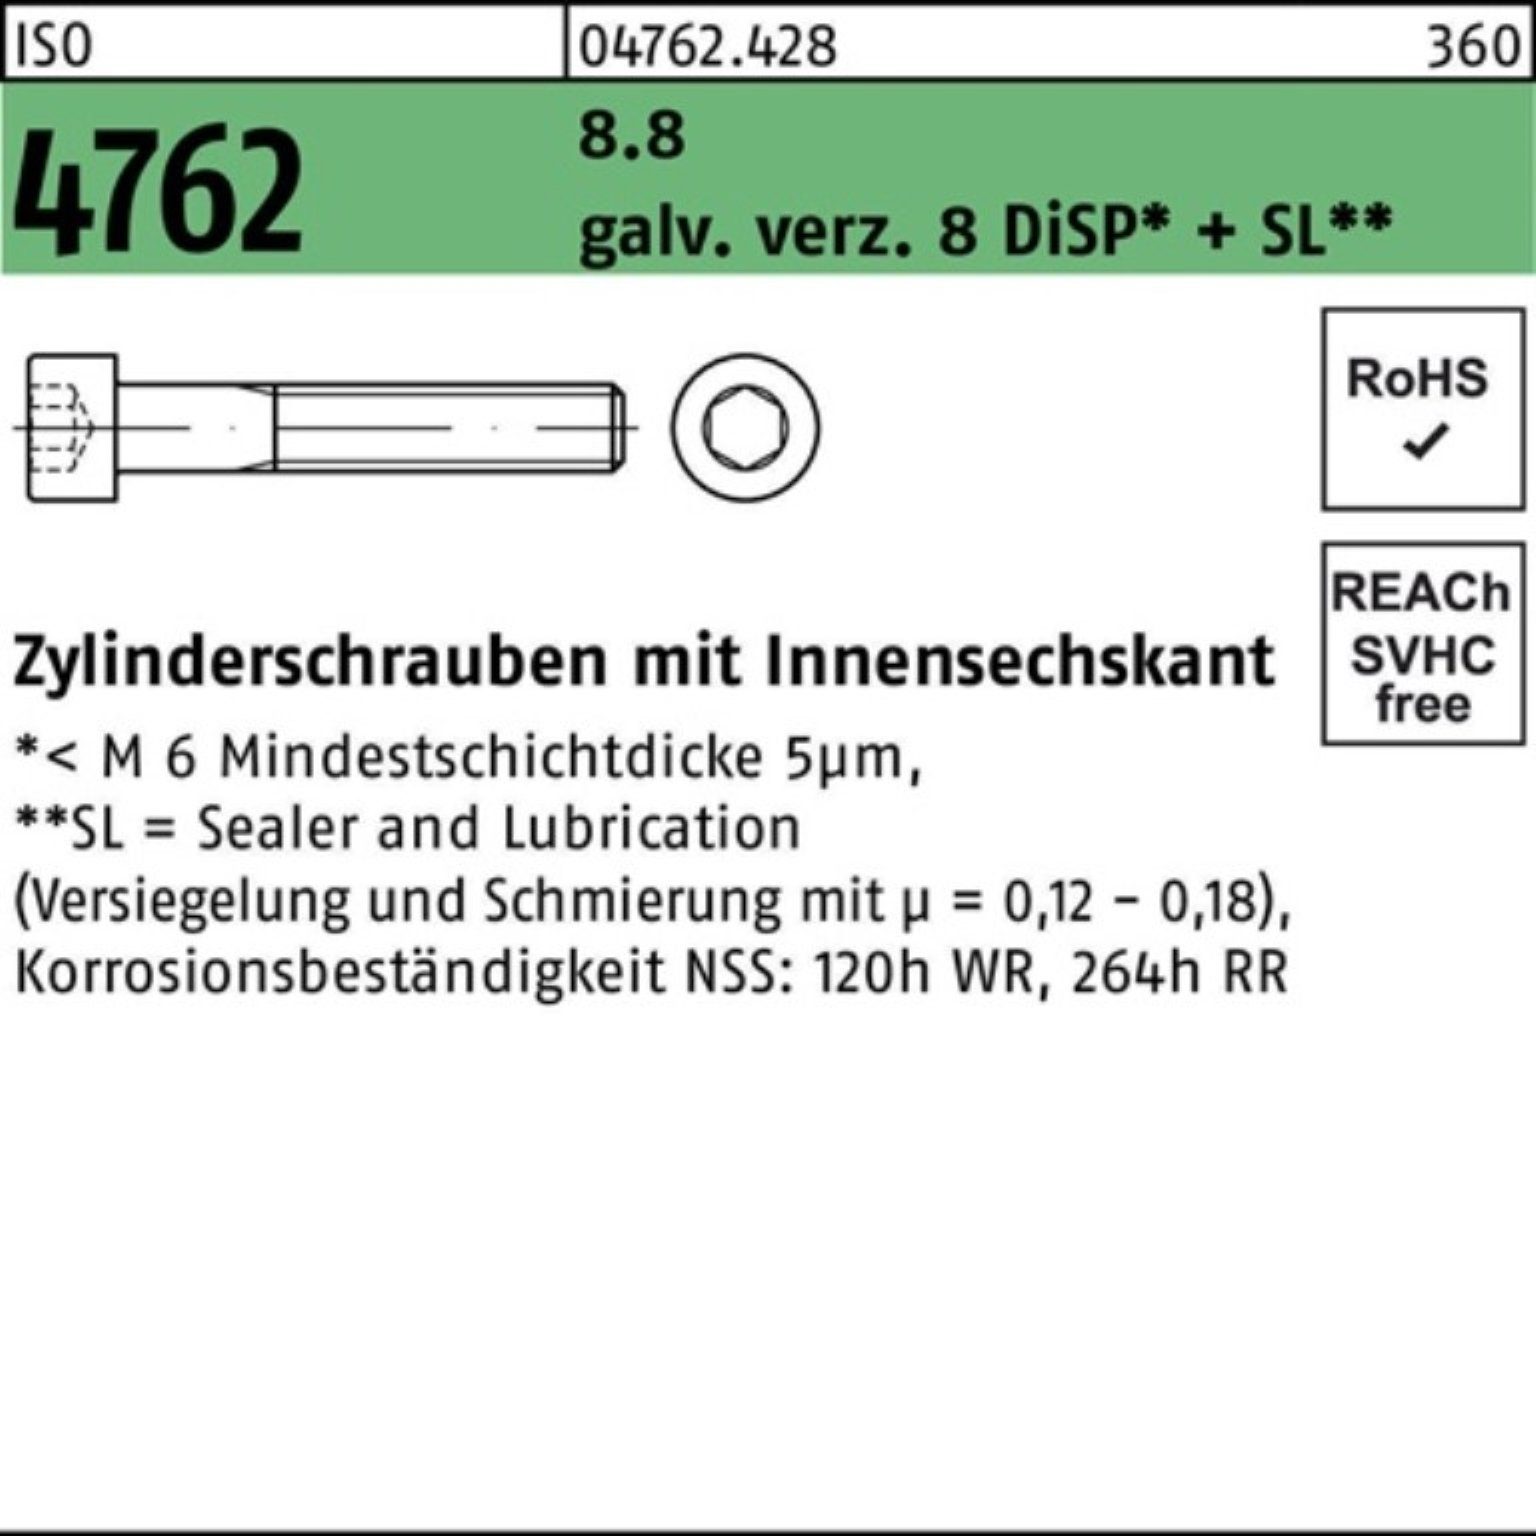 ISO Reyher Zylinderschraube Zylinderschraube galv.verz. 4762 Pack 100er M12x75 8 Innen-6kt 8.8